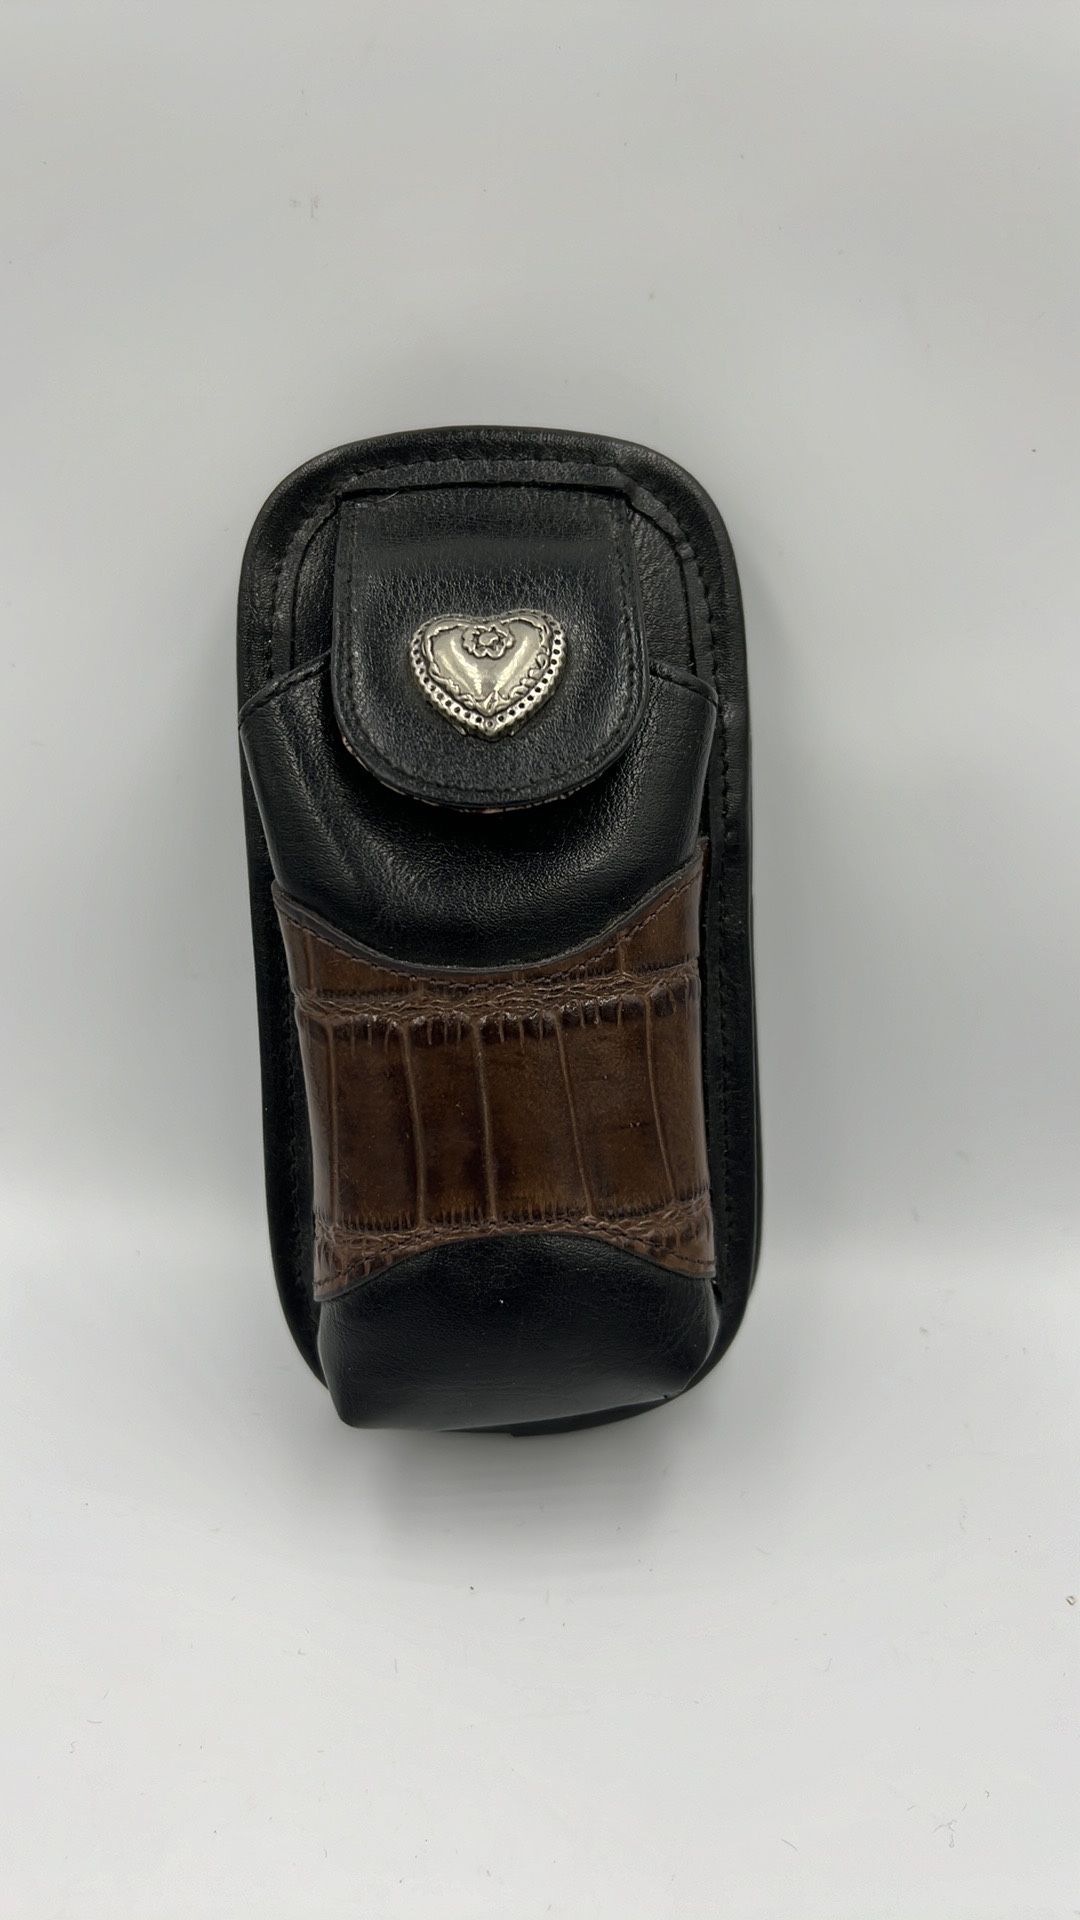 VTG Brighton Leather Cell Phone/Eye Glass Case Crossbody- No Strap, Brn & Blk.